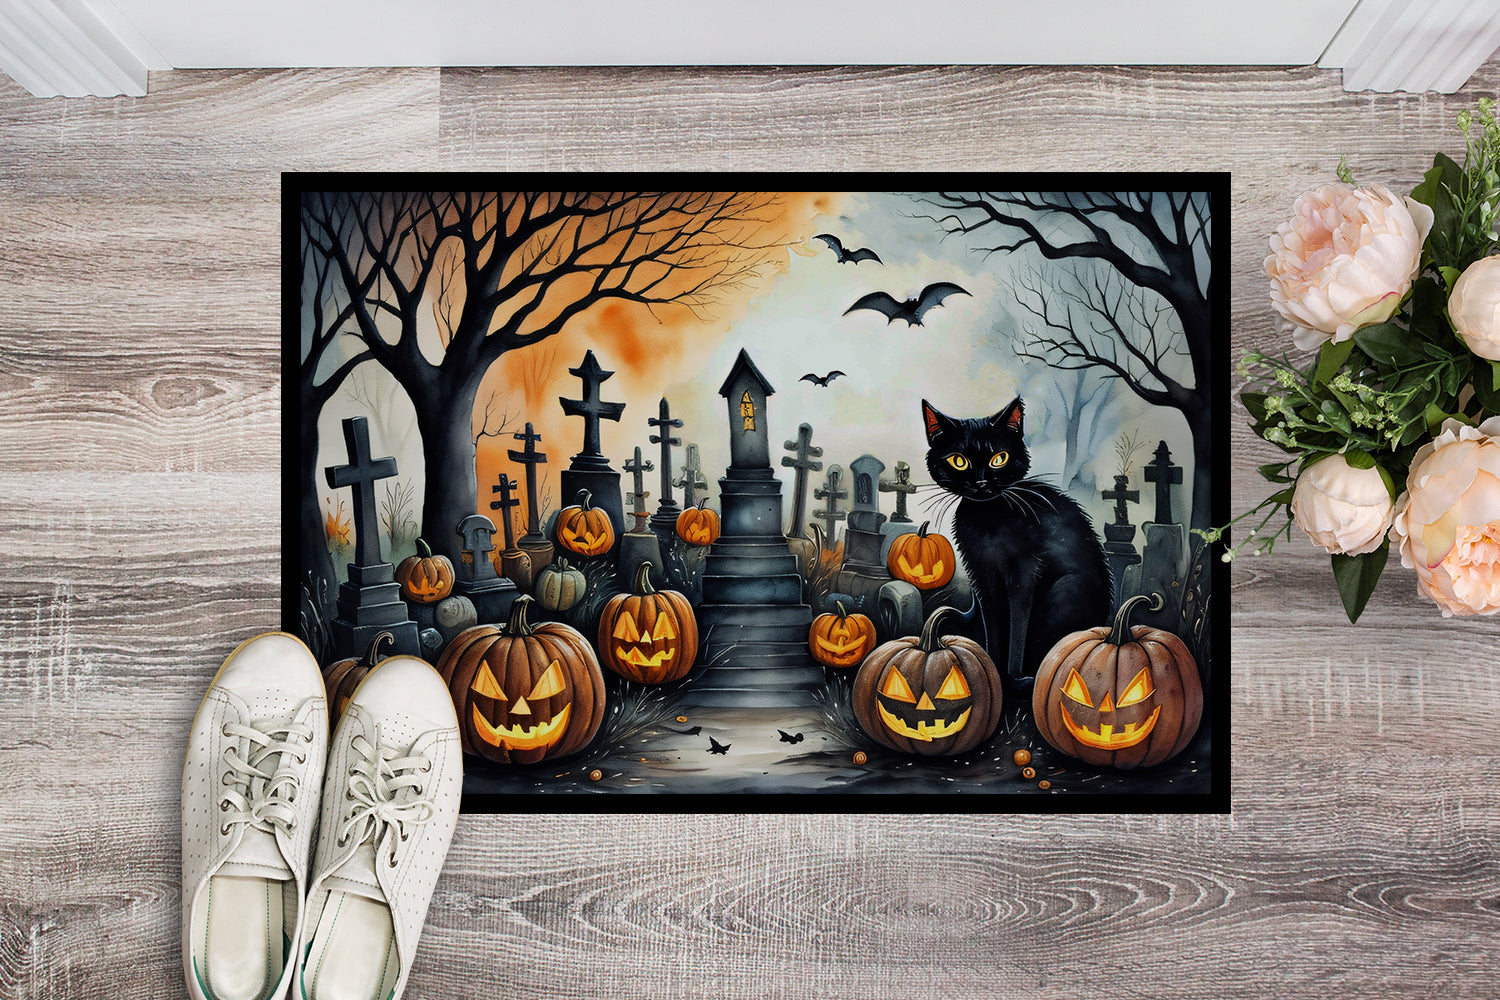 Buy this Black Cat Spooky Halloween Doormat 18x27